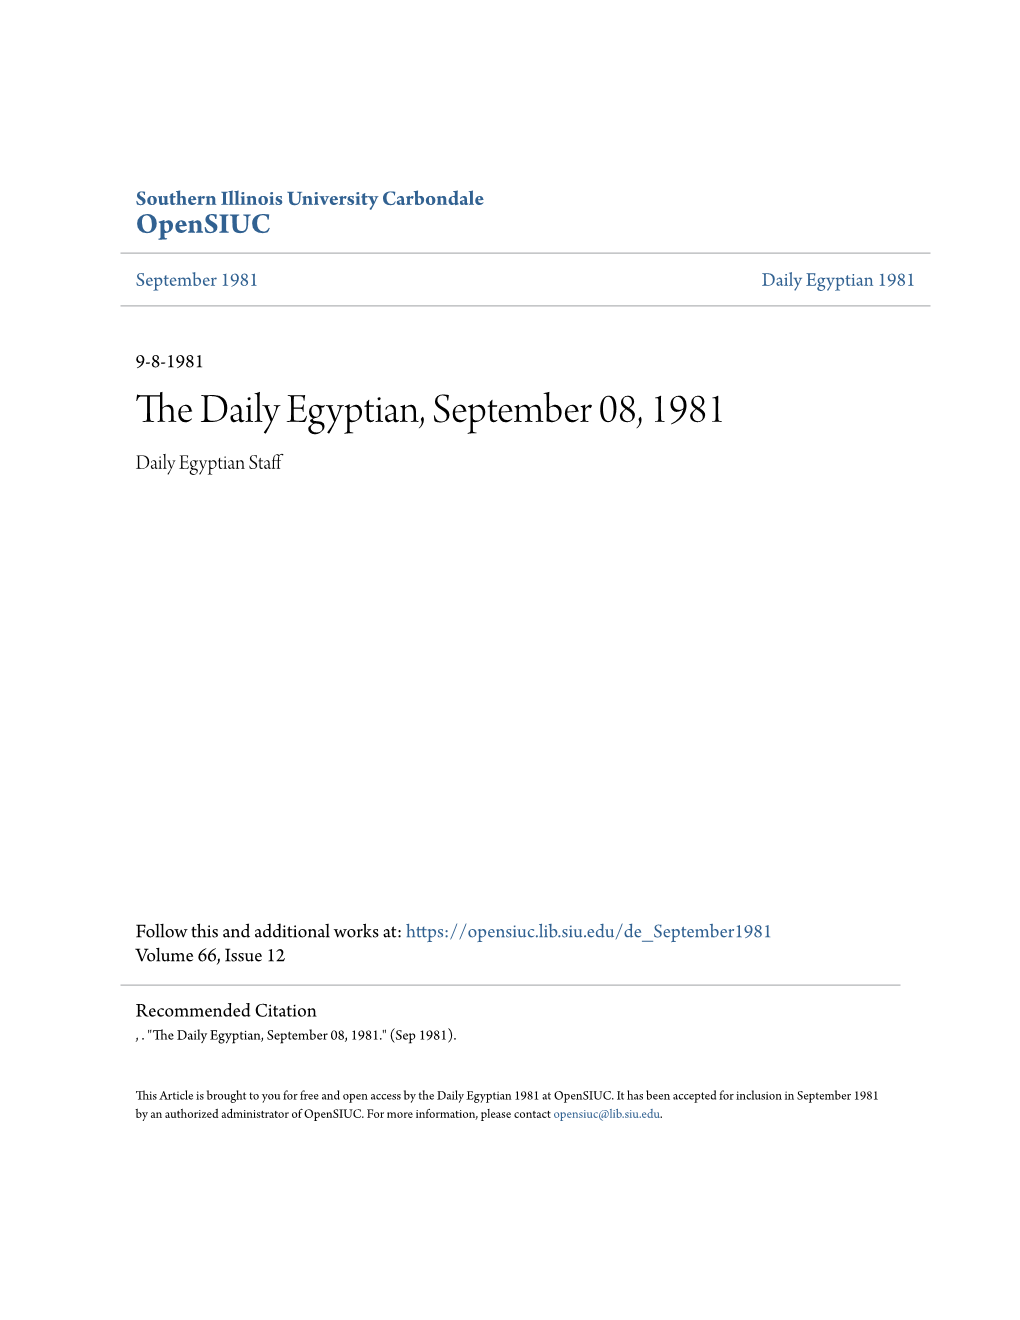 The Daily Egyptian, September 08, 1981